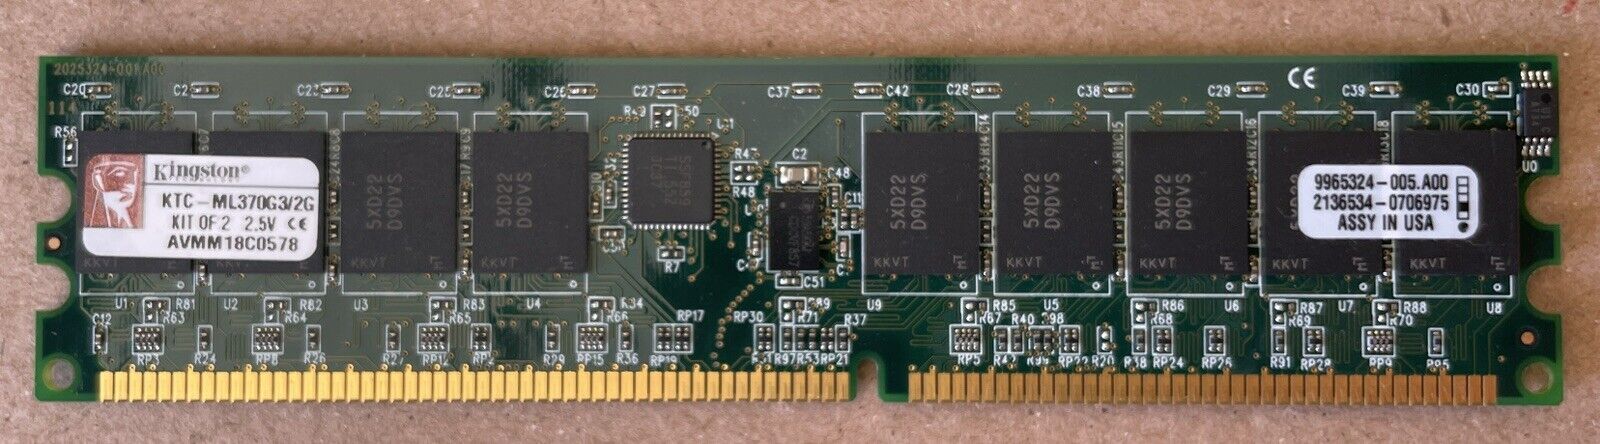 1X KINGSTON KTC-ML370G3/2G (1GB) DDR 266 PC2100 1GB ECC REG FOR SERVER